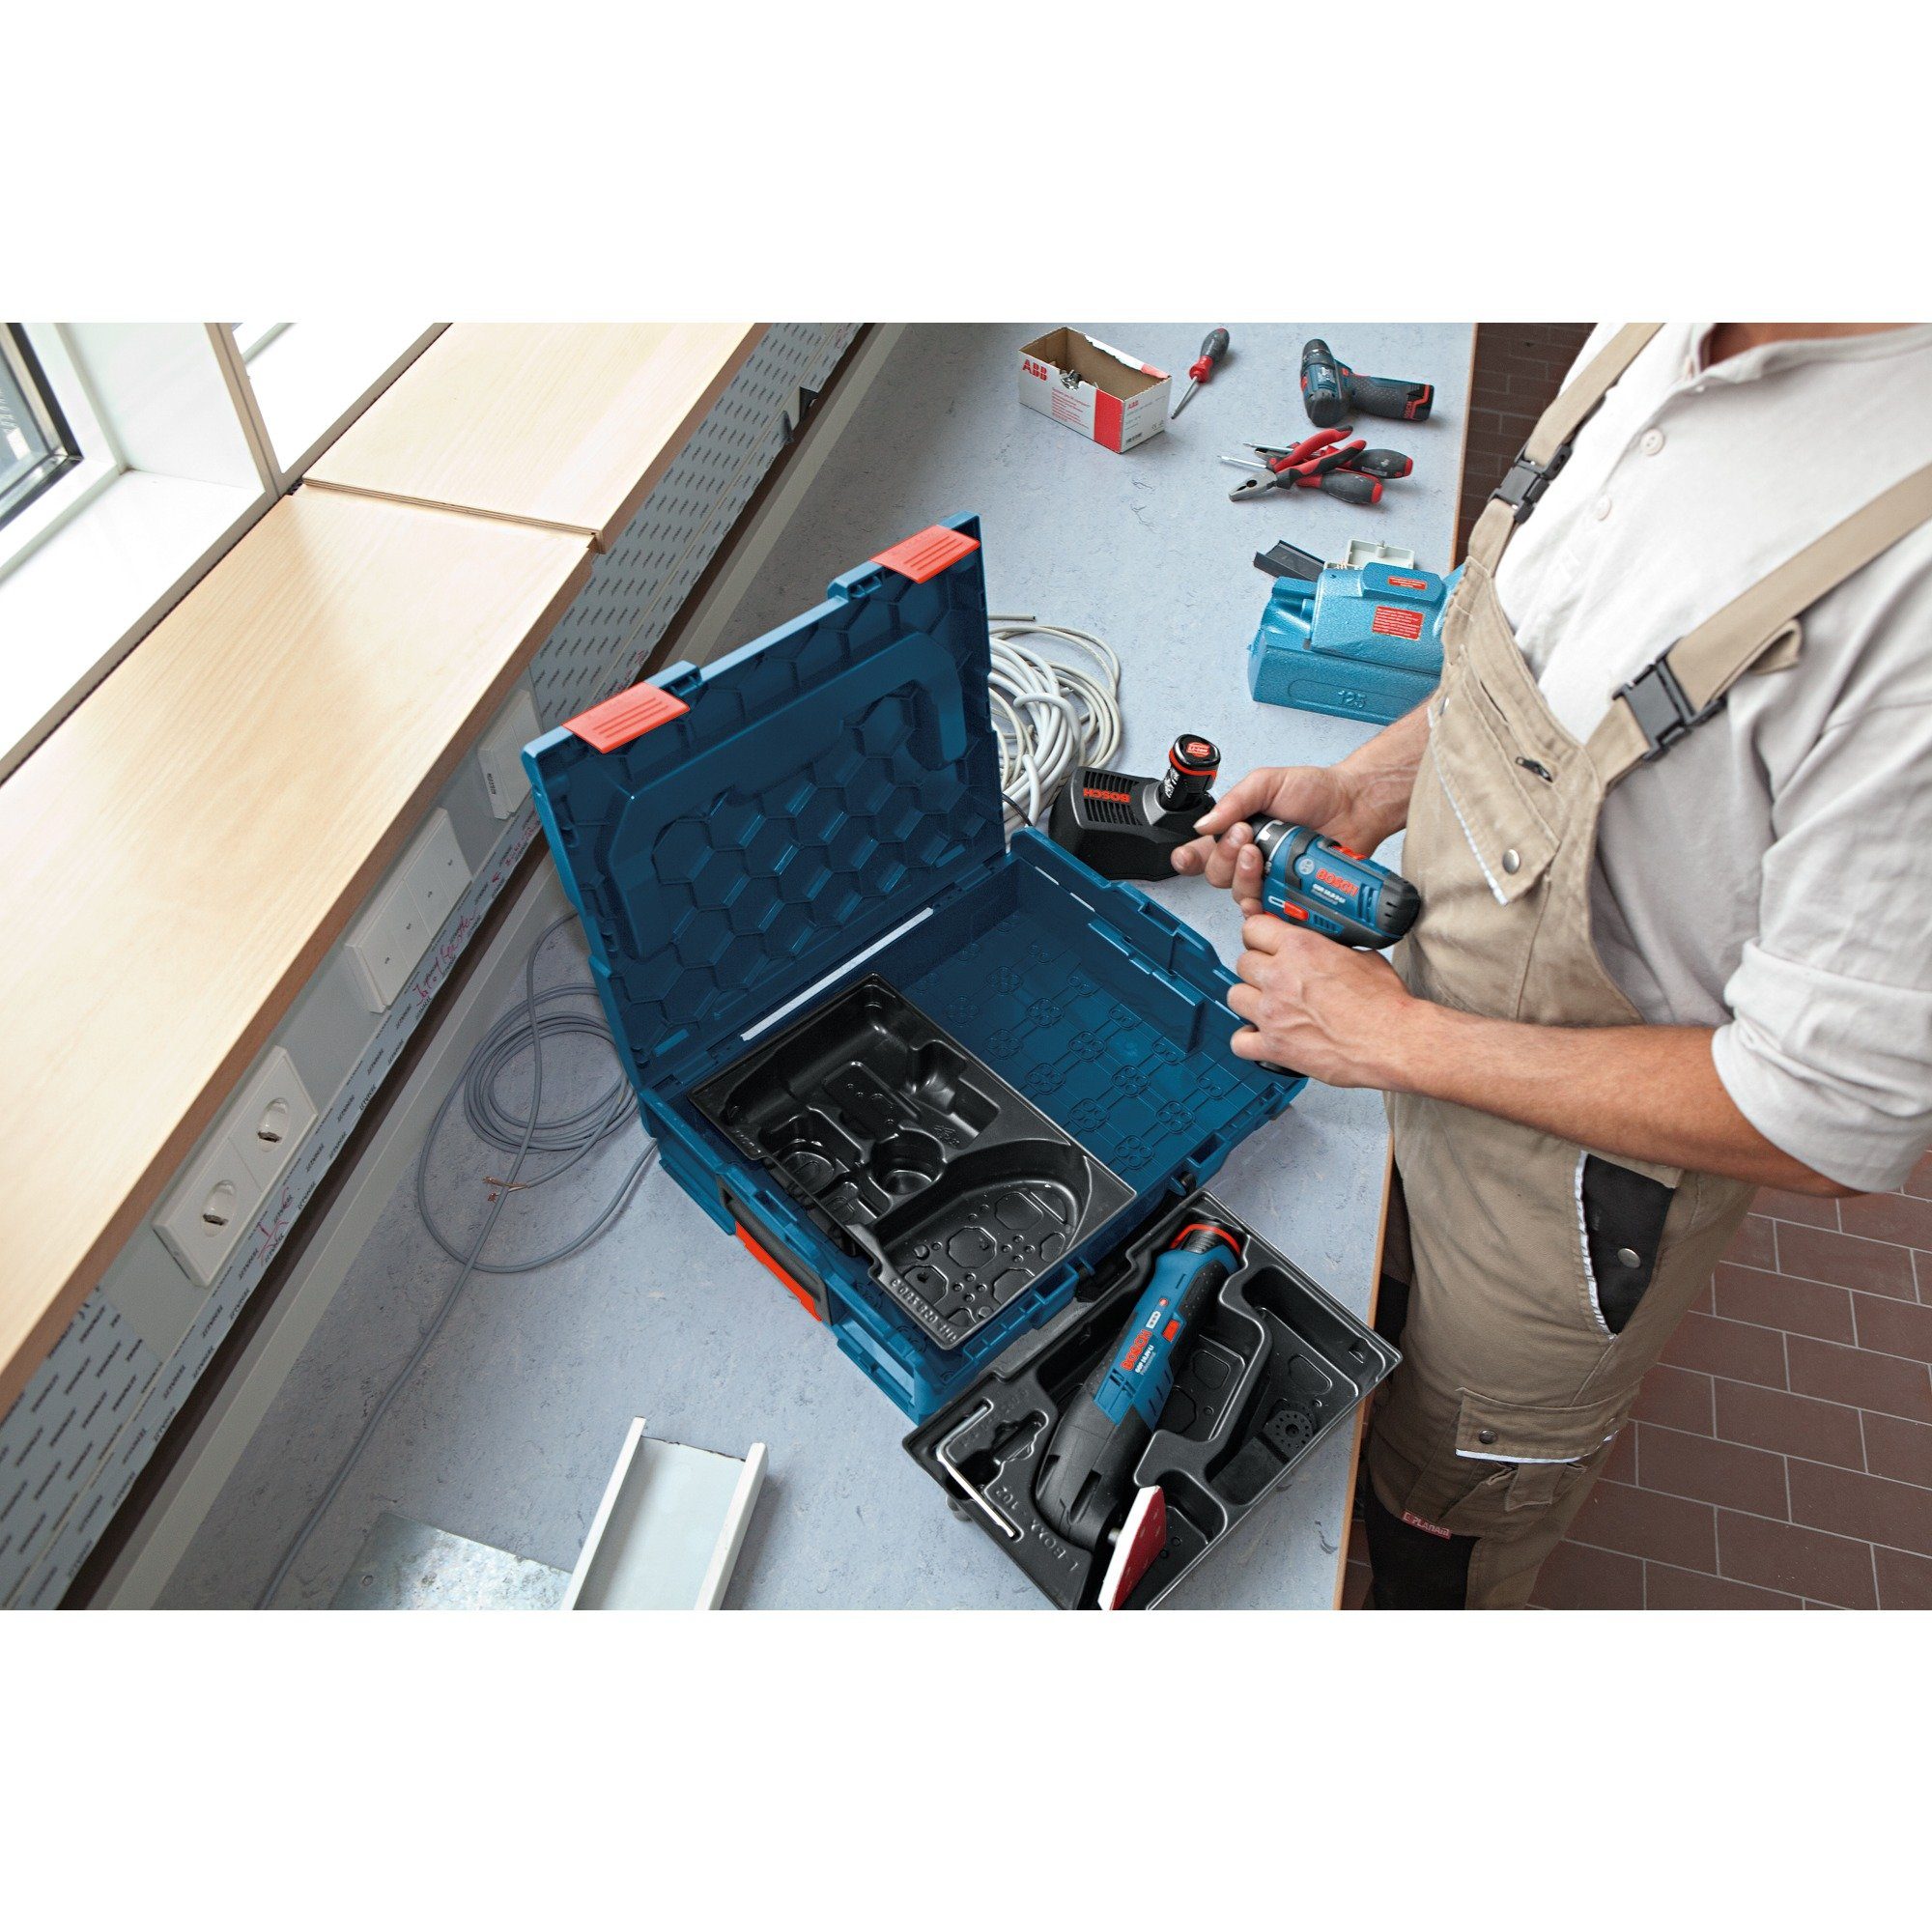 BOSCH Werkzeugbox 2-24 für Professional GBH Einlage Bosch L-Boxx